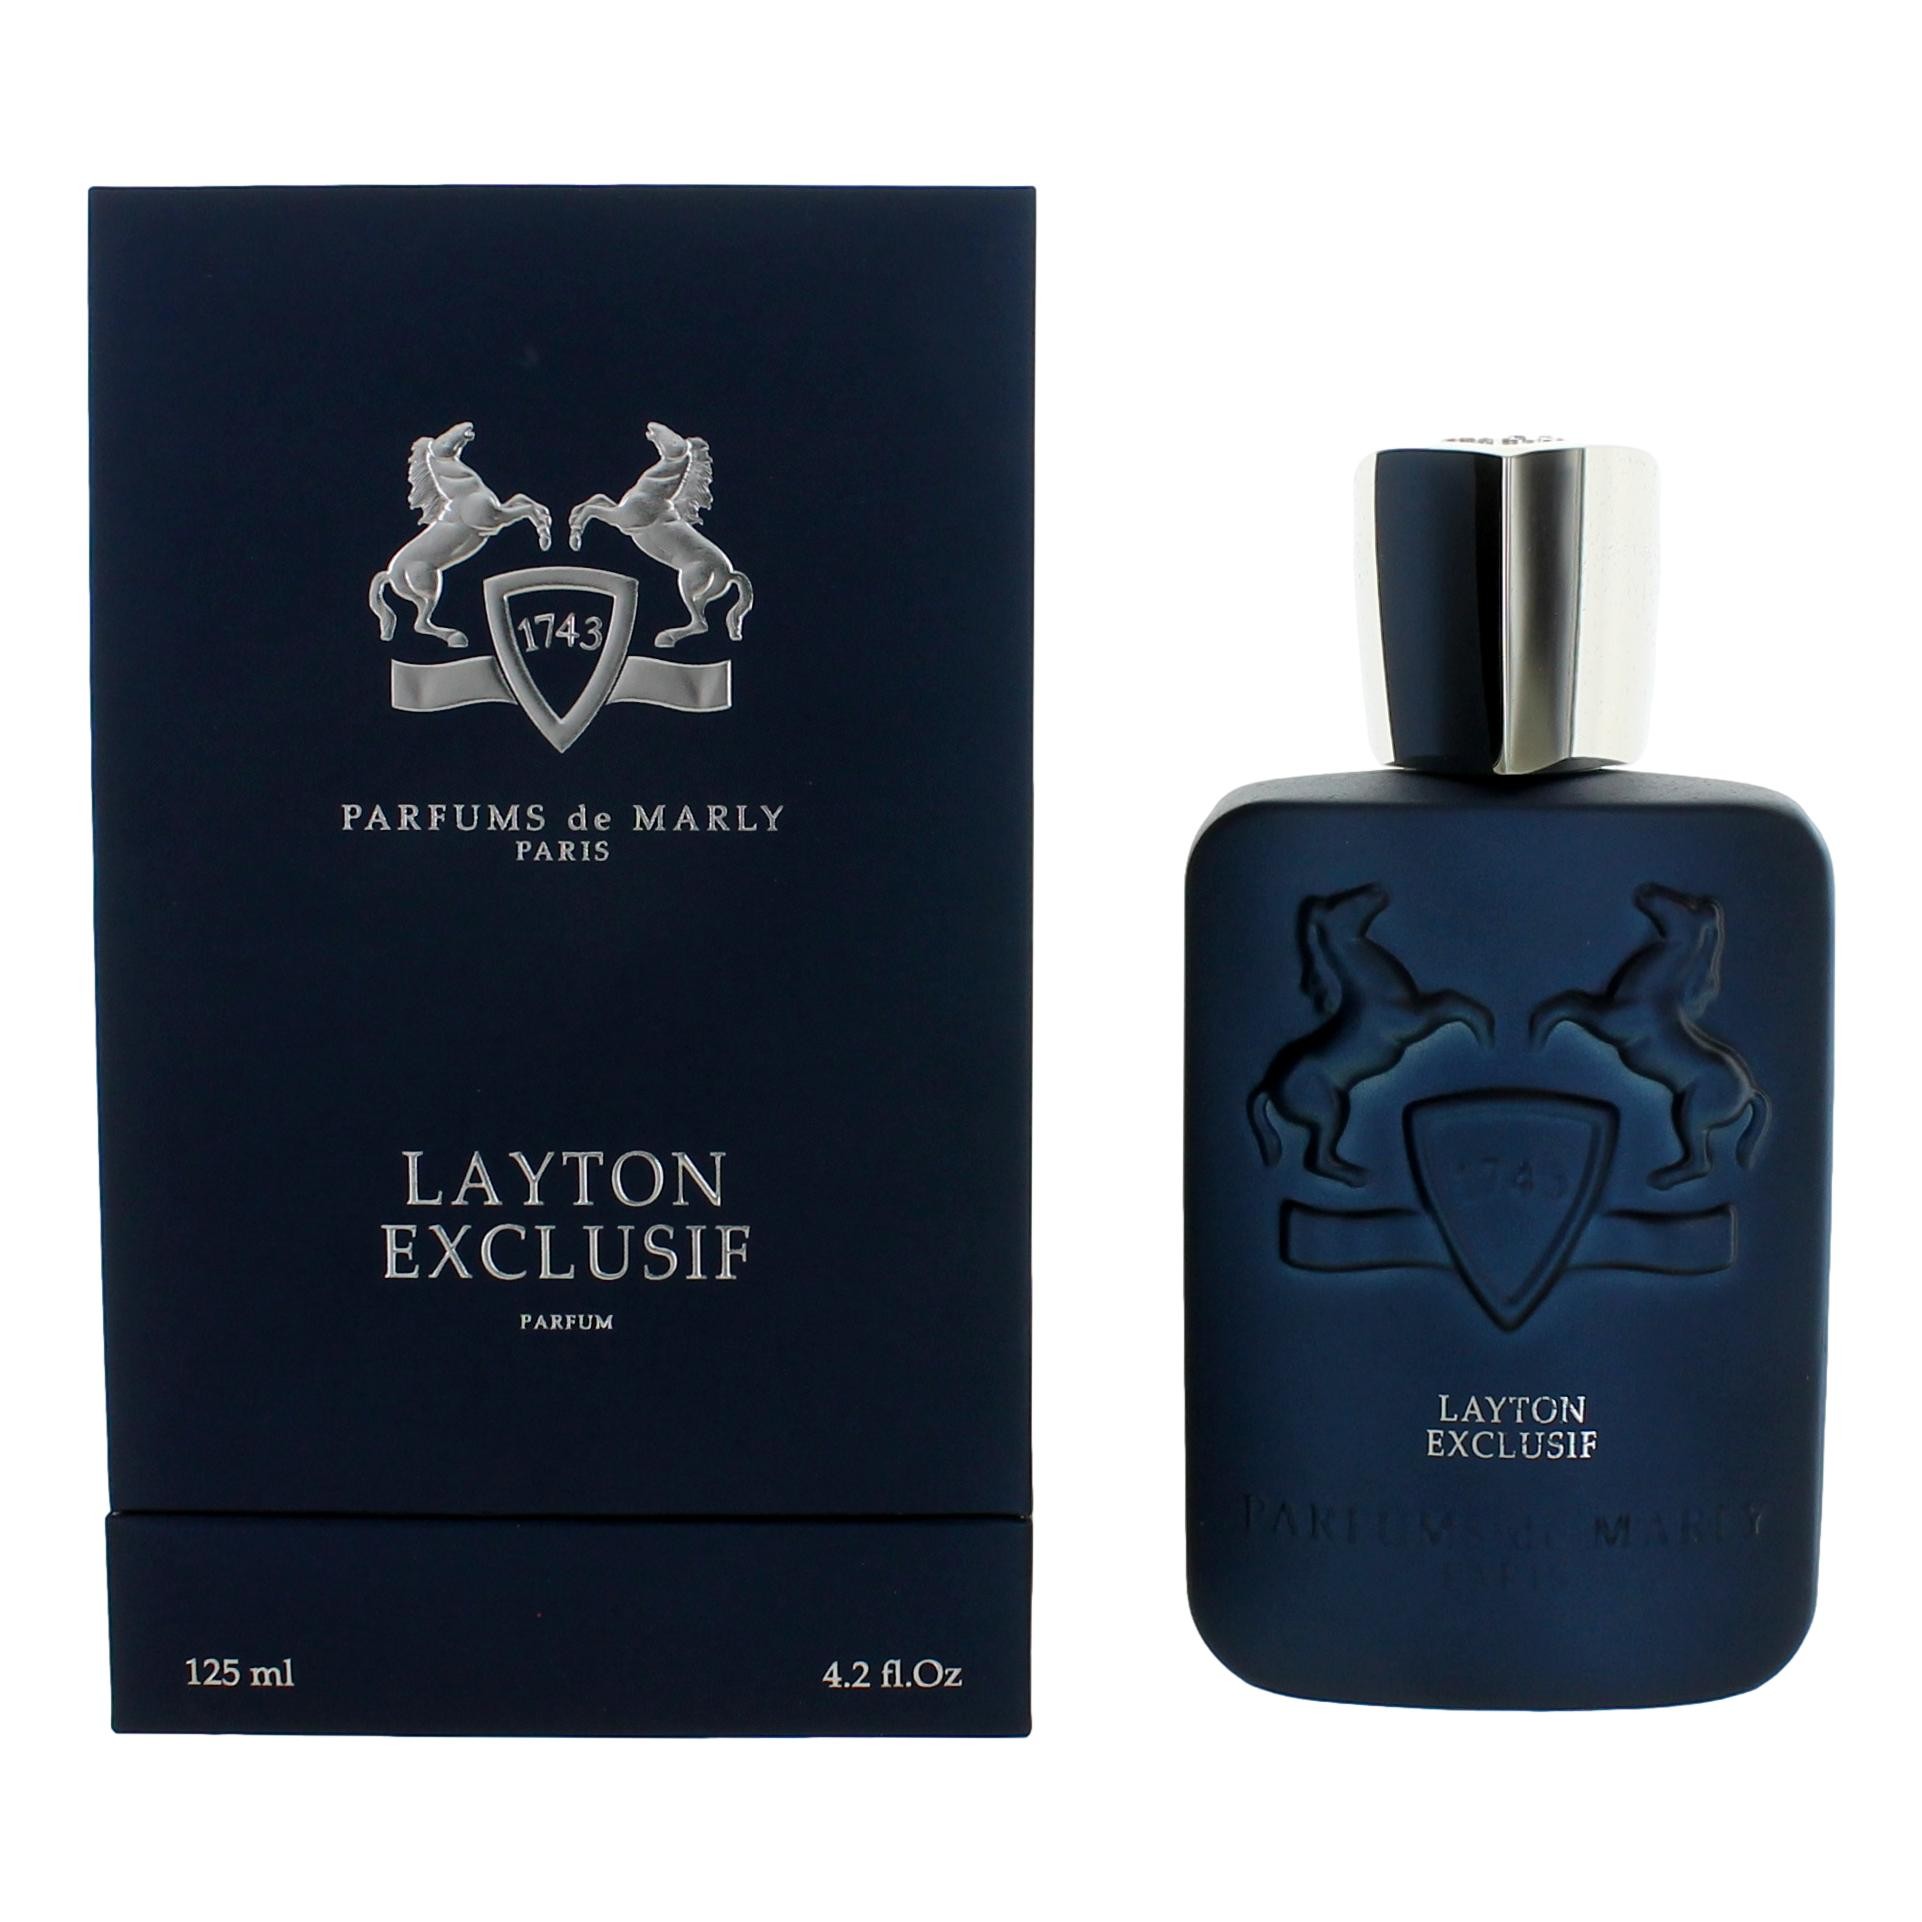 Parfums de Marly Layton Exclusif by Parfums de Marly 4.2 oz Eau De Parfum Spray for Men